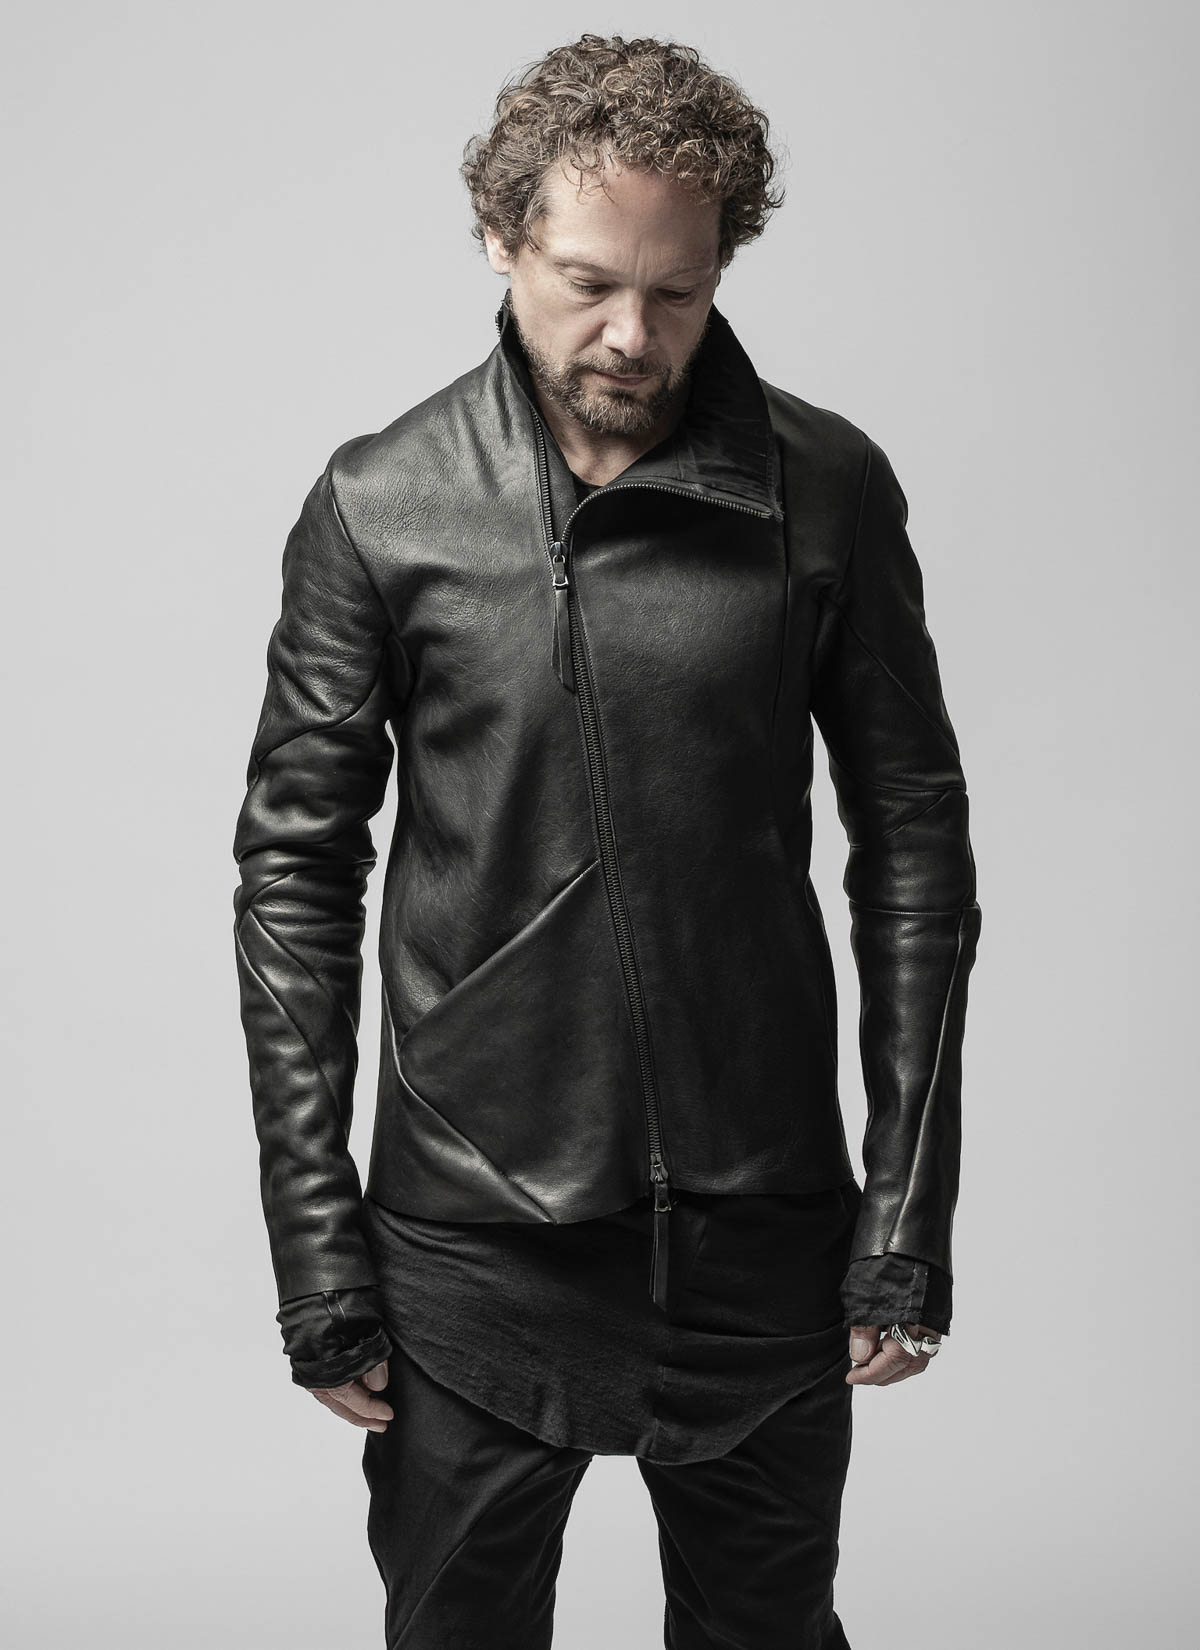 絶妙なデザイン .efiLevol destroyed leather Jacket | www 